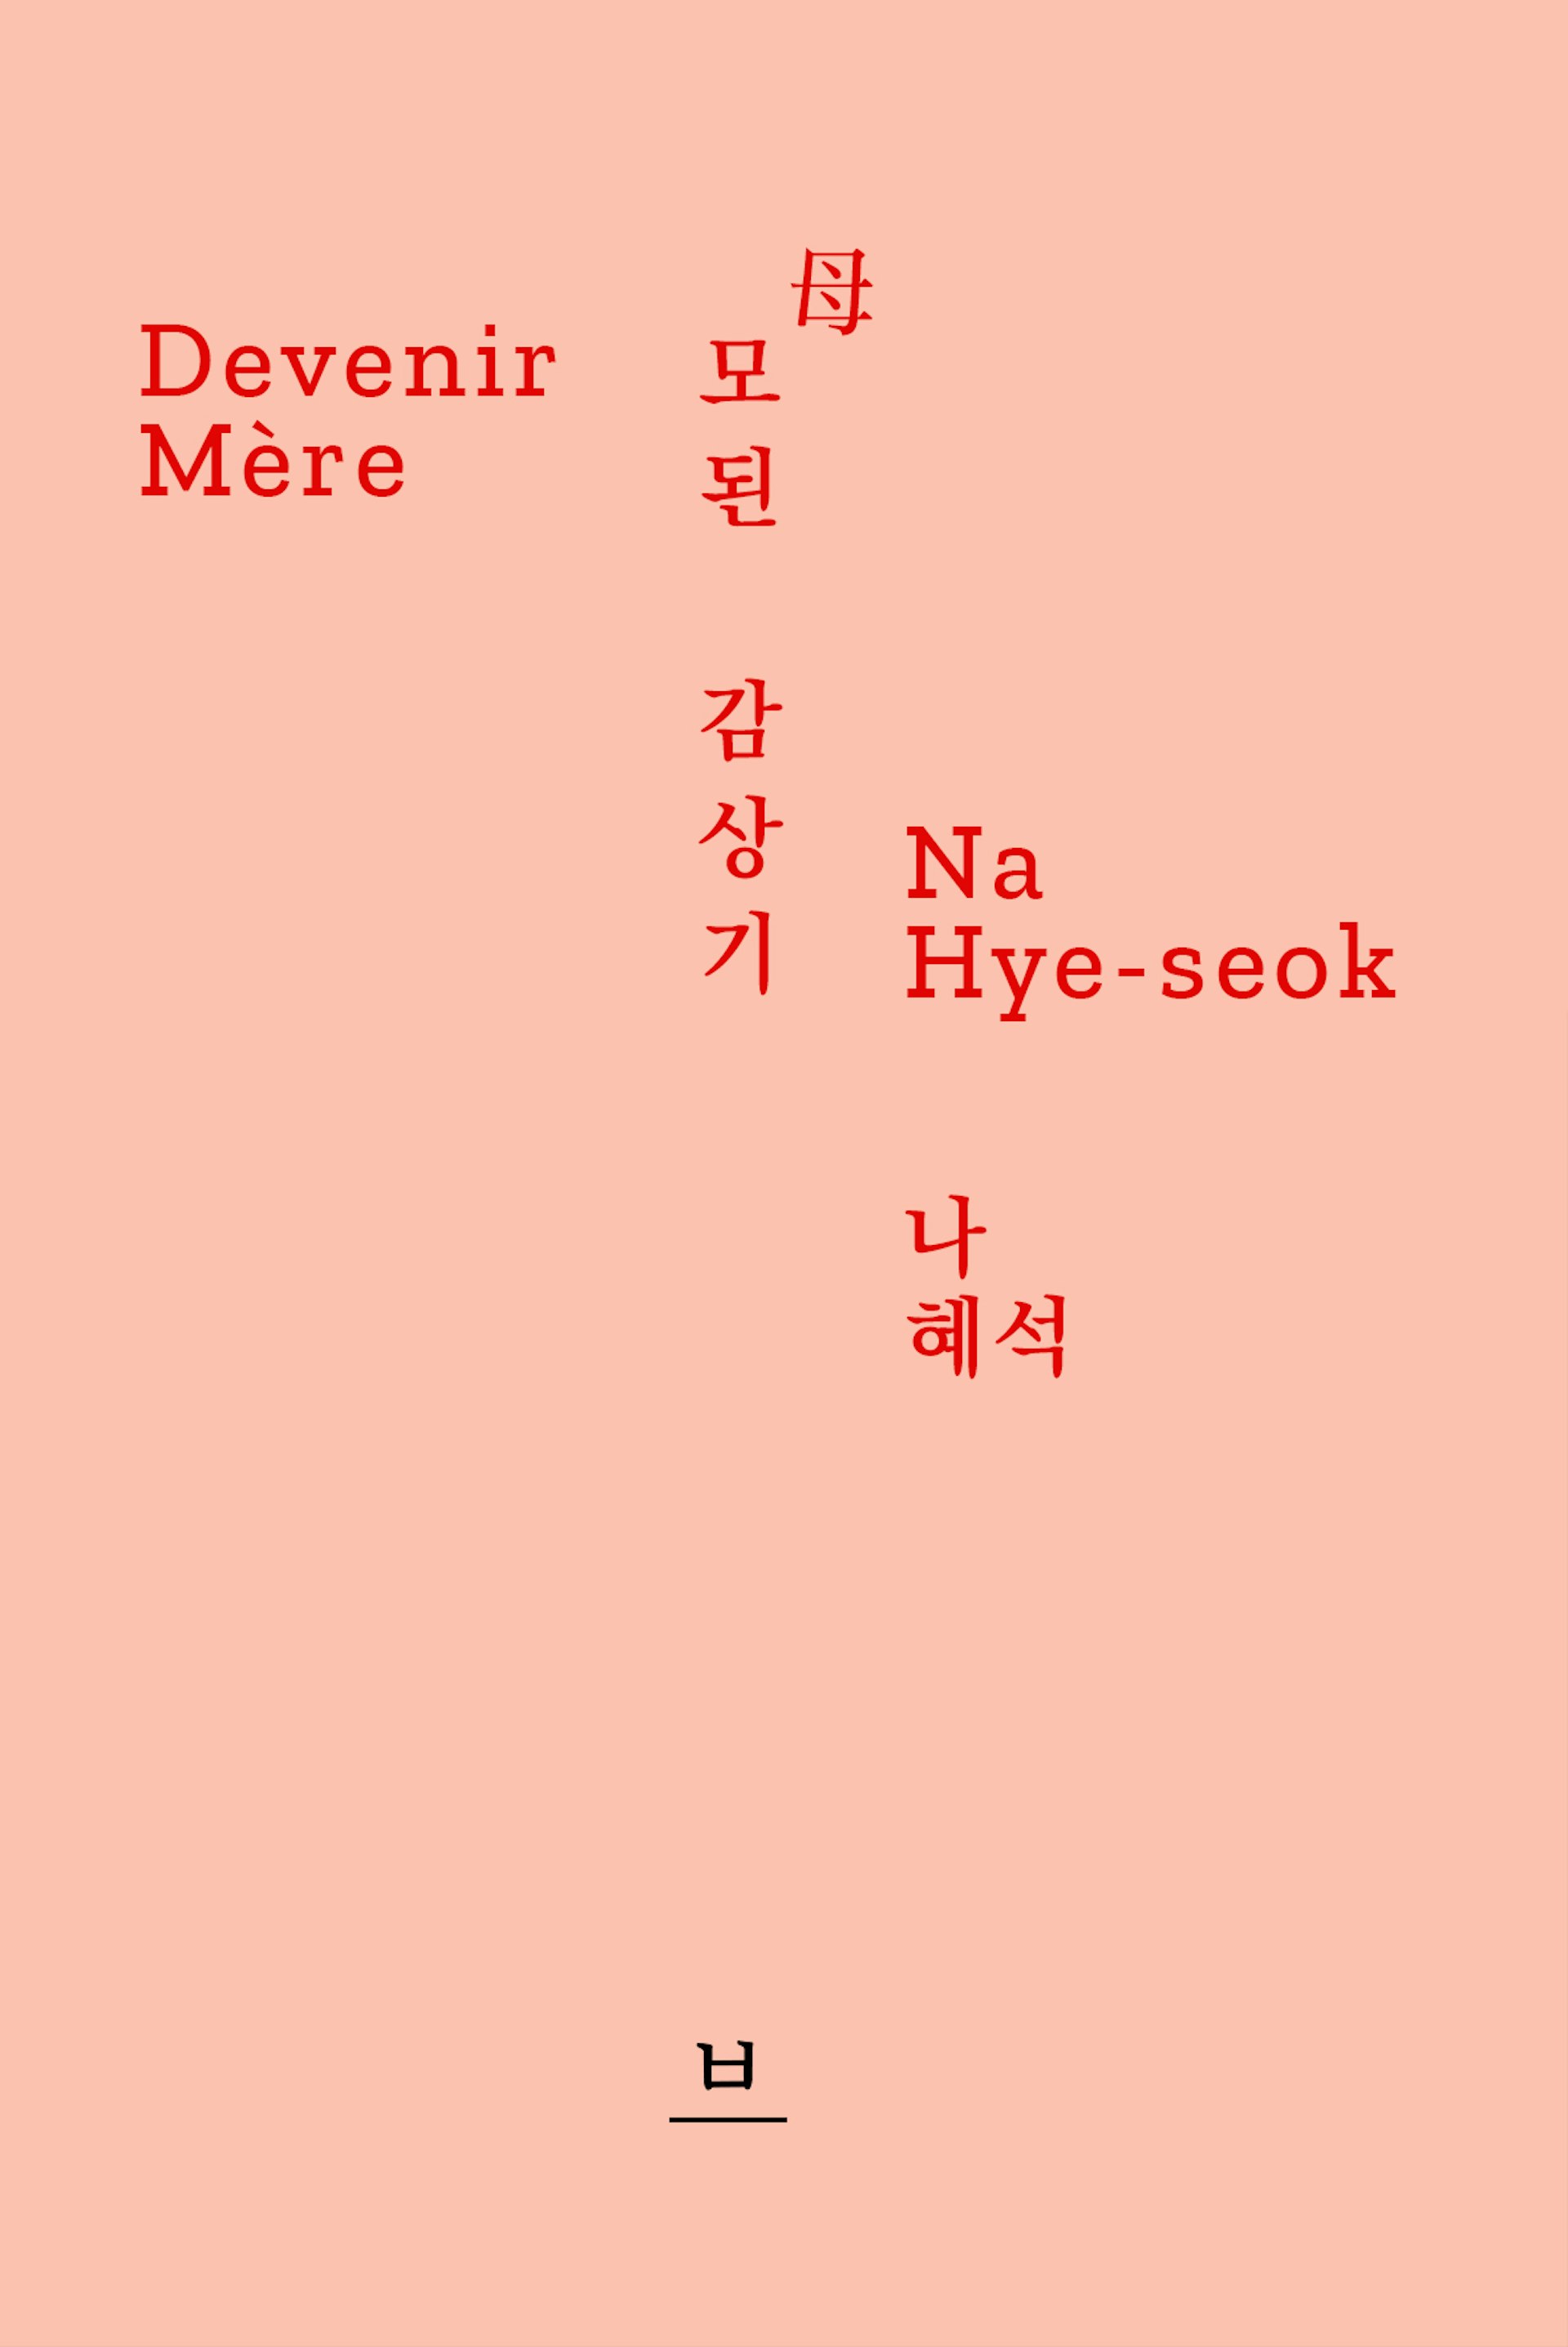 baek-books-na-hye-seok-devenir-mere